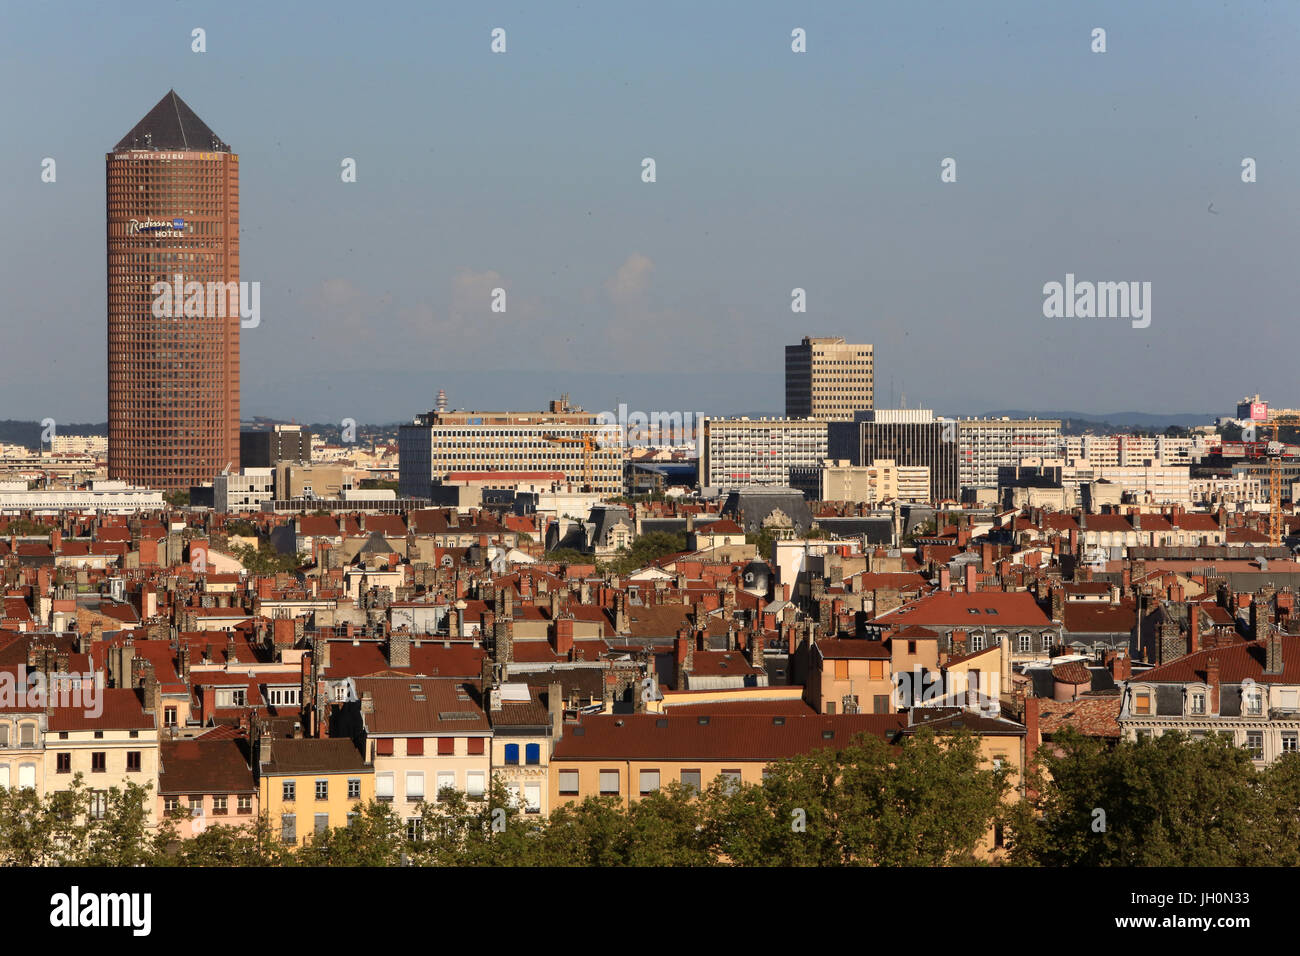 Hôtel Radisson. Vue panoramique à partir de la vue de Notre Dame de la colline de Fourvière. La France. Banque D'Images